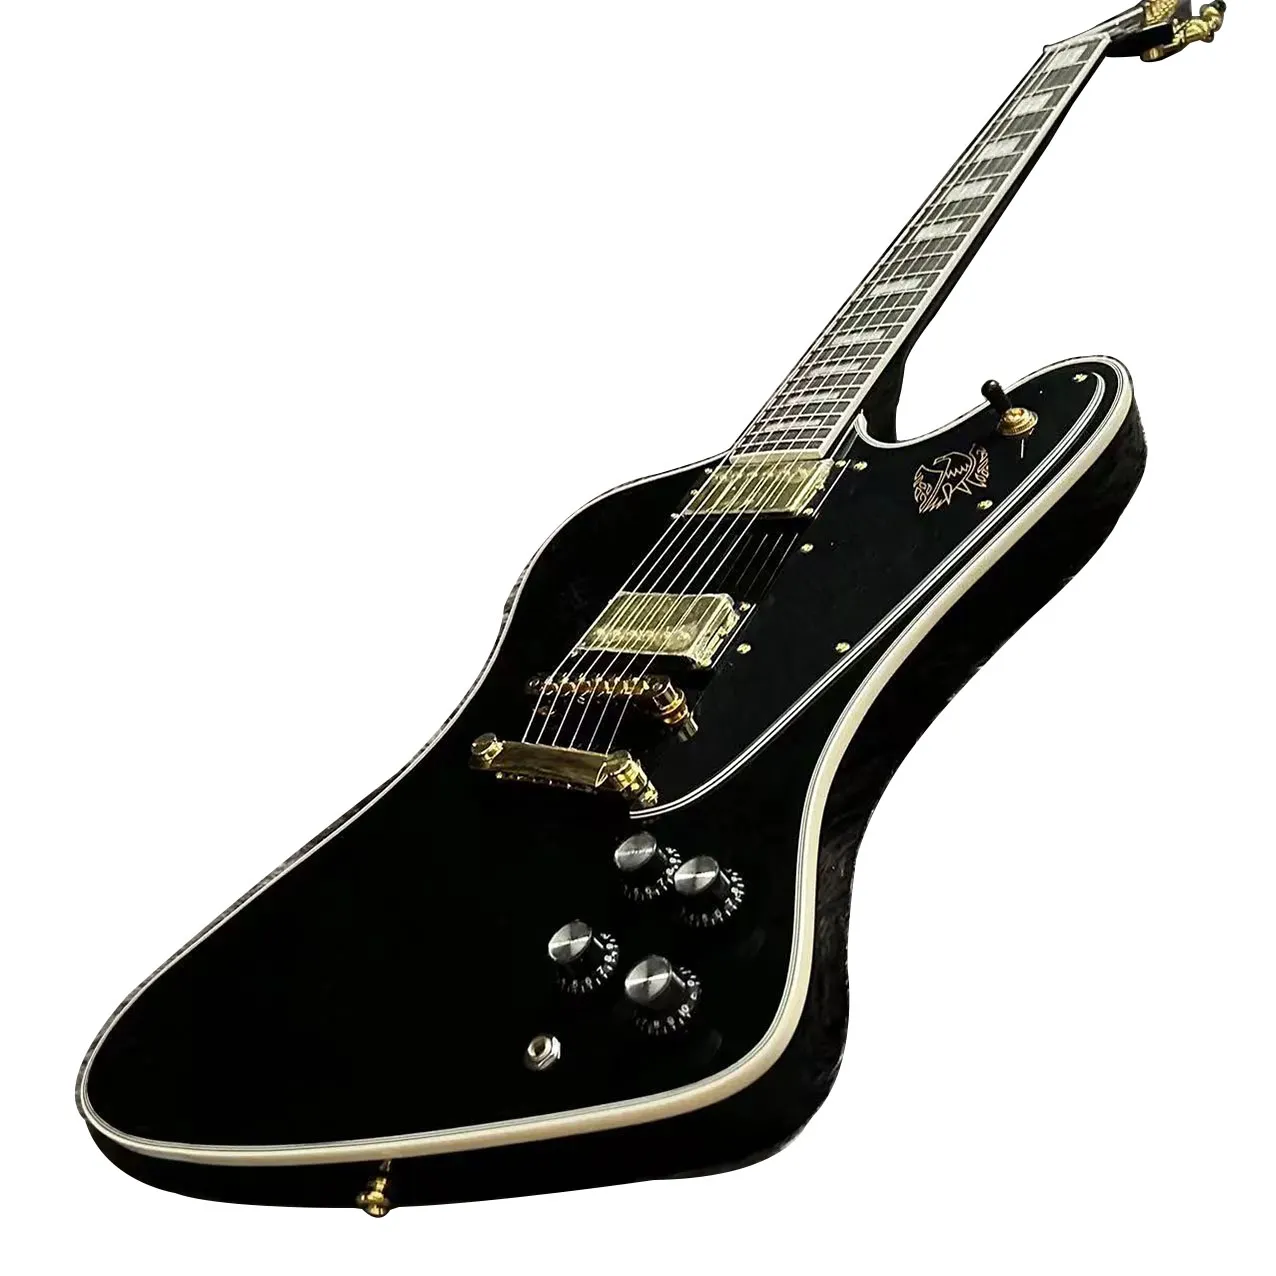 Firebird gitar, siyah renk, maun gövdesi, gül ağacı klavye, altın donanım, o matic köprü, ücretsiz gemi